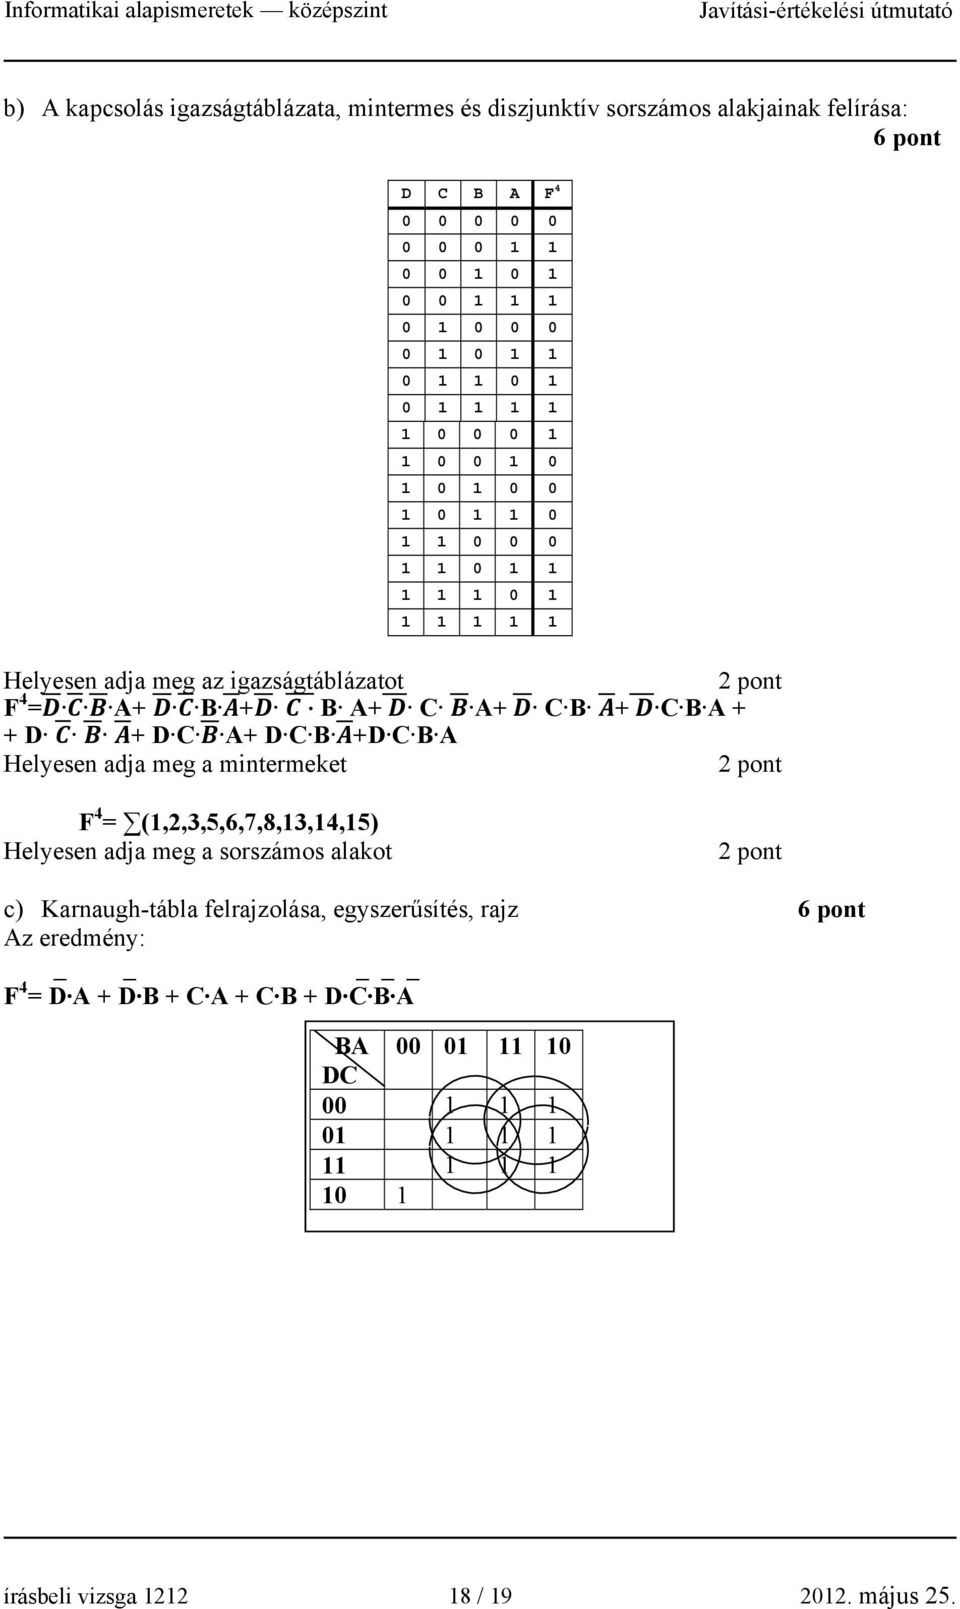 + + D + D C A+ D C B +D C B A Helyesen adja meg a mintermeket 2 pont F 4 = (1,2,3,5,6,7,8,13,14,15) Helyesen adja meg a sorszámos alakot 2 pont c) Karnaugh-tábla